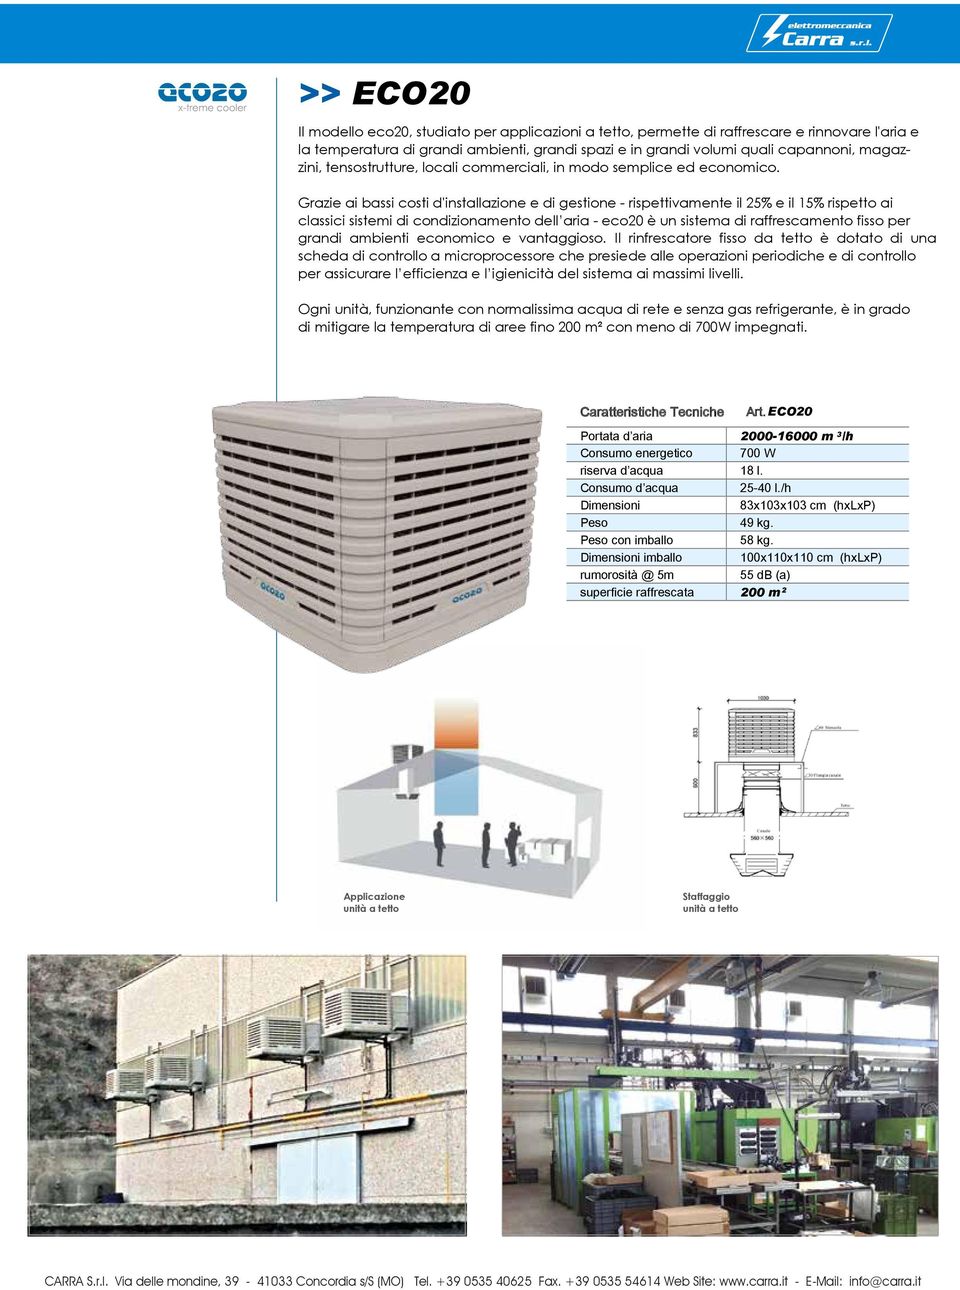 Grazie ai bassi costi d'installazione e di gestione - rispettivamente il 25% e il 15% rispetto ai classici sistemi di condizionamento dell aria - eco20 è un sistema di raffrescamento fisso per grandi